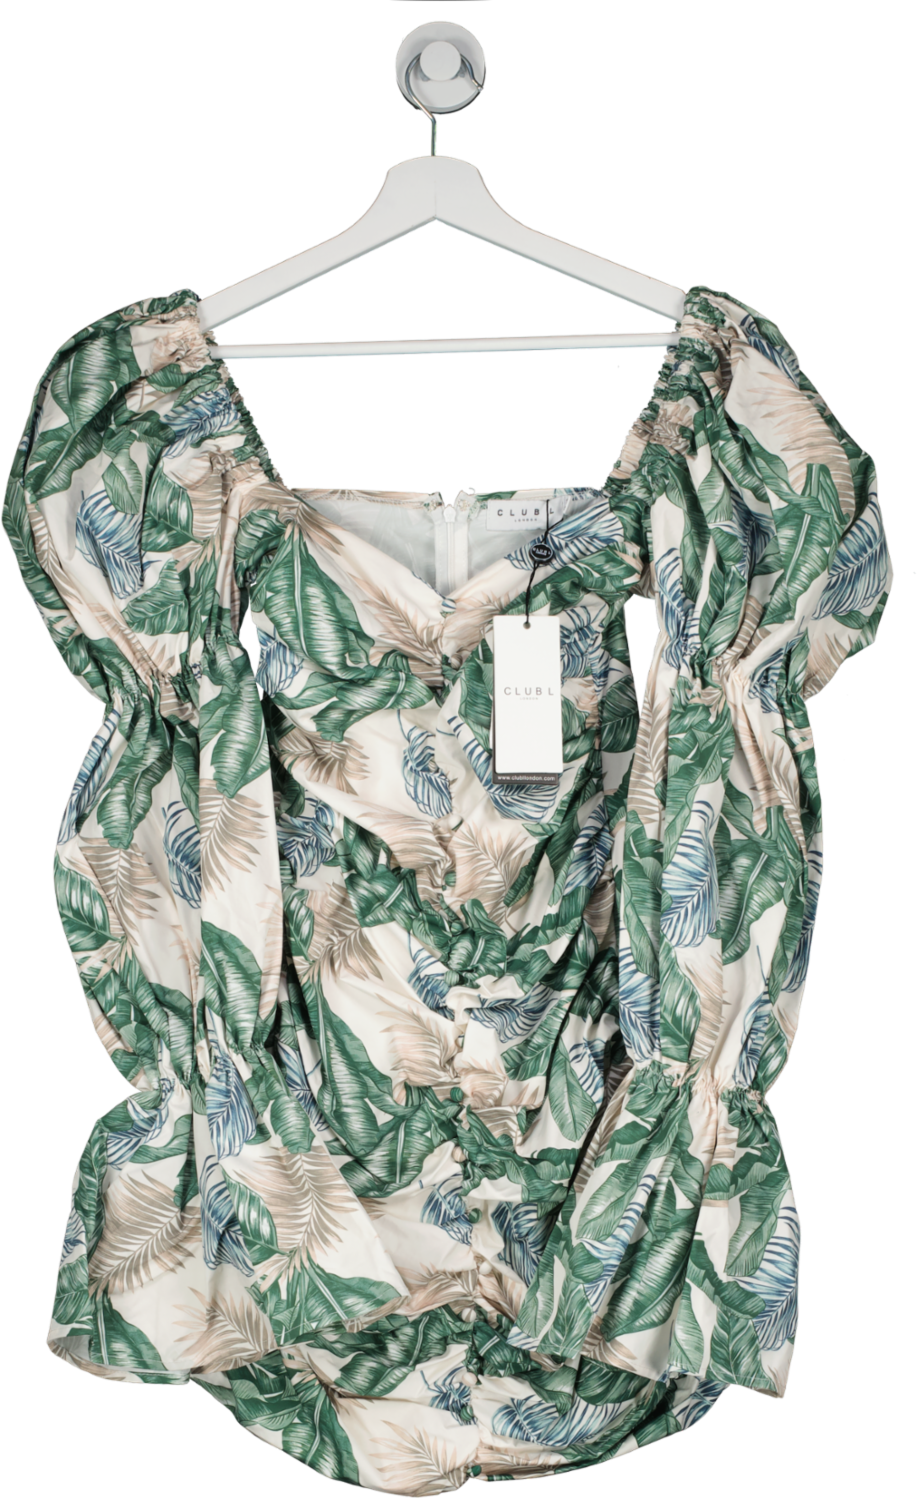 Club L Green Tropical Print Ruched Puff Sleeve Mini Dress UK 10